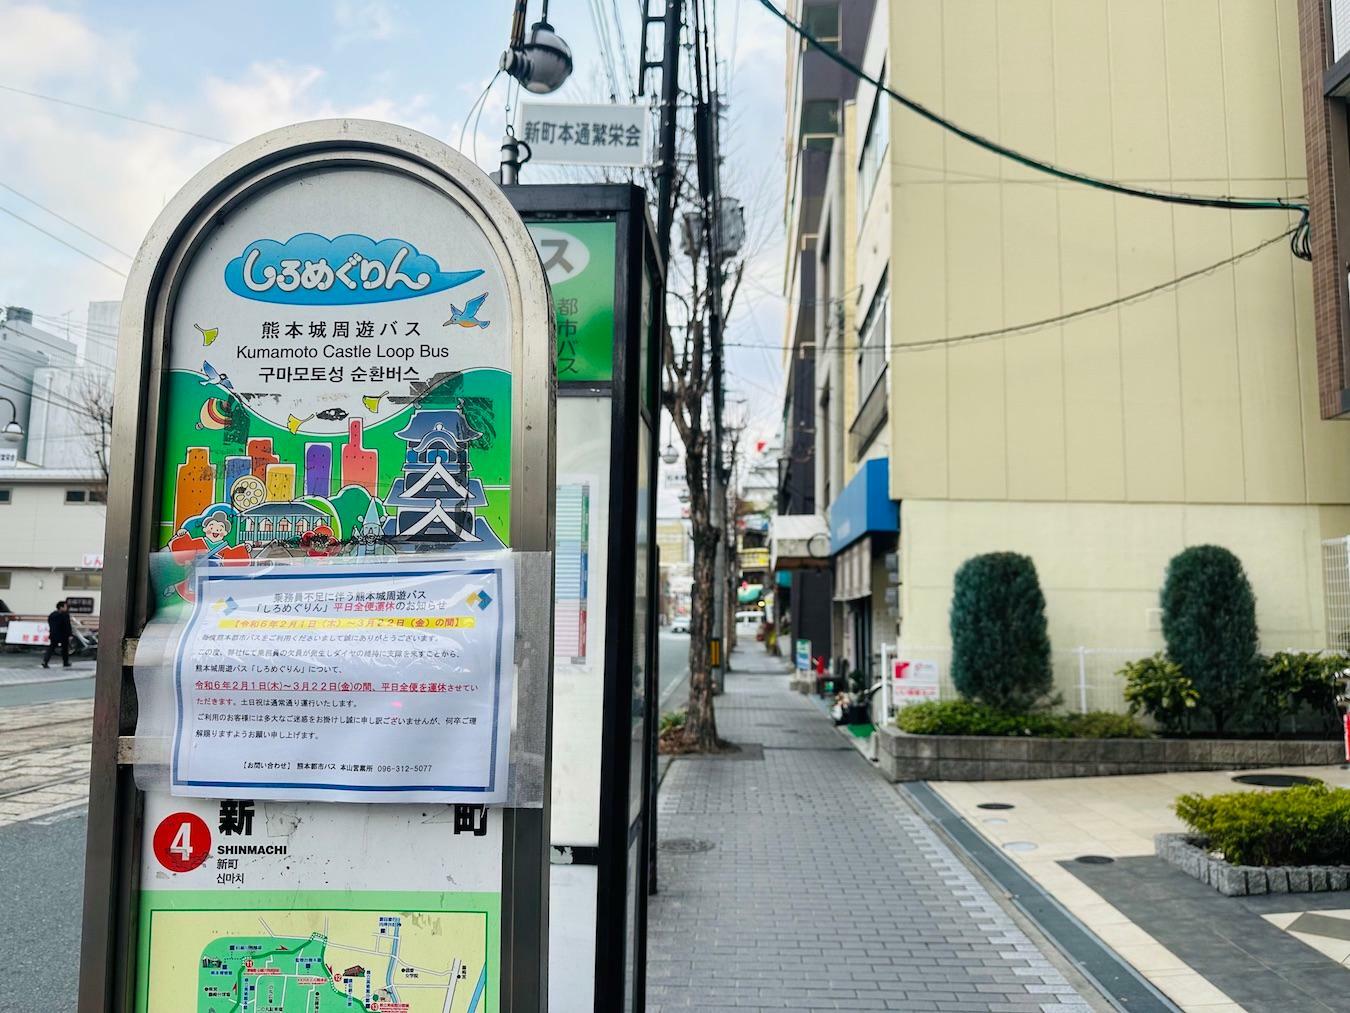 熊本城周遊バスしろめぐりんの新町バス停からもすぐです。